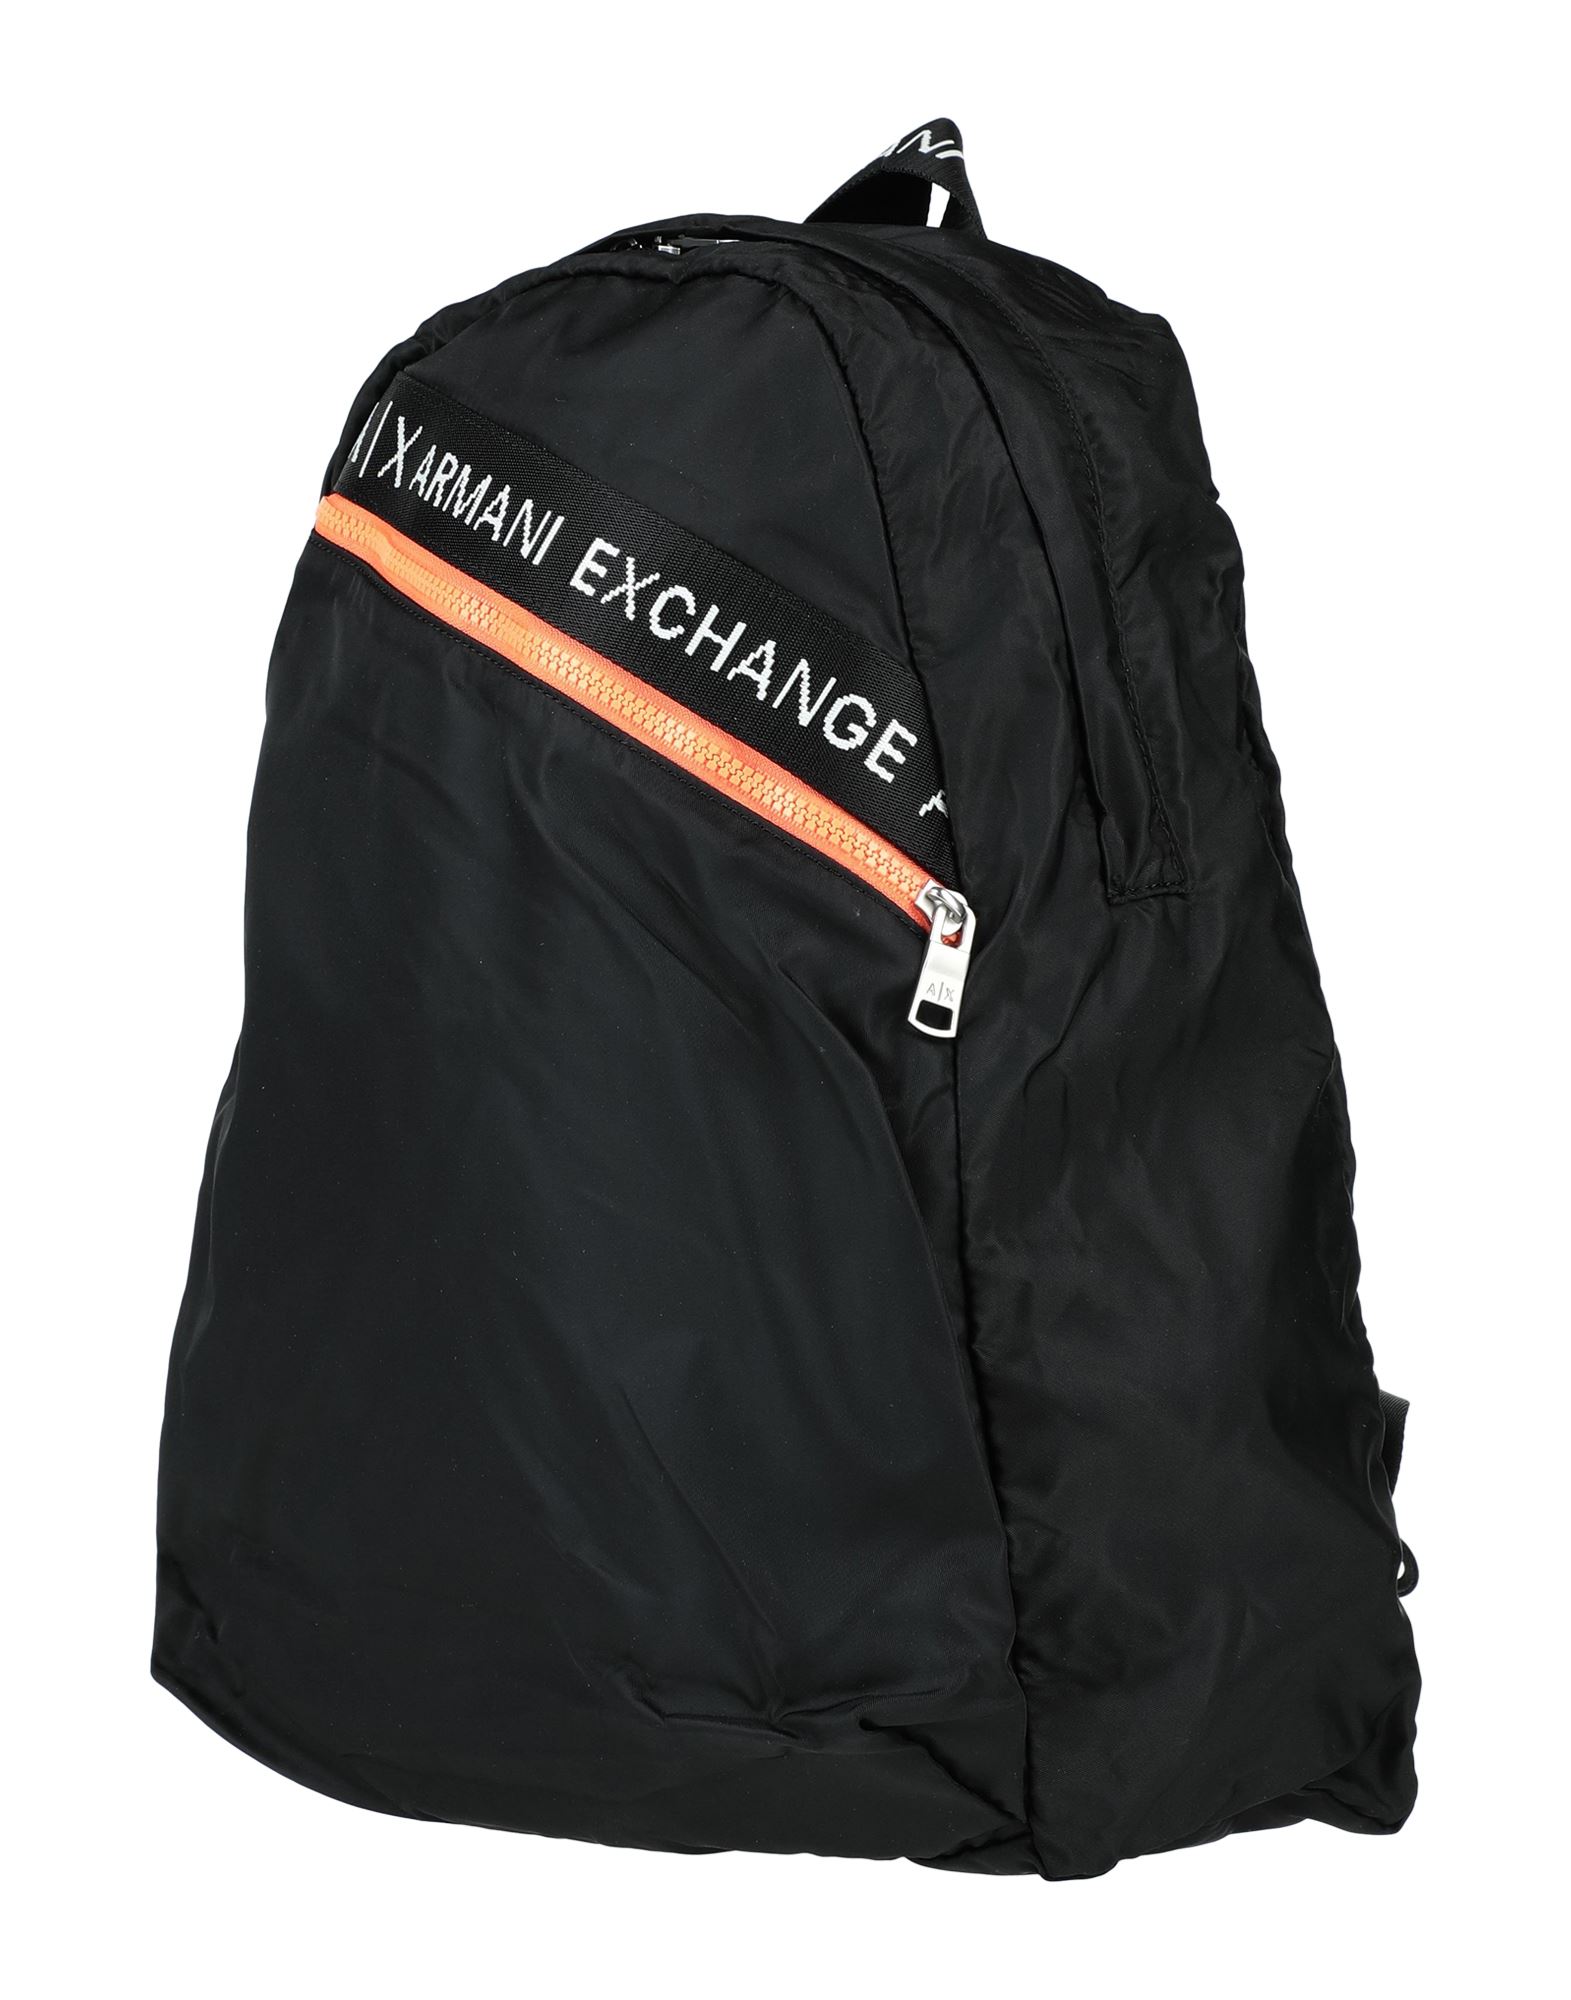 Armani Exchange Backpacks In Black